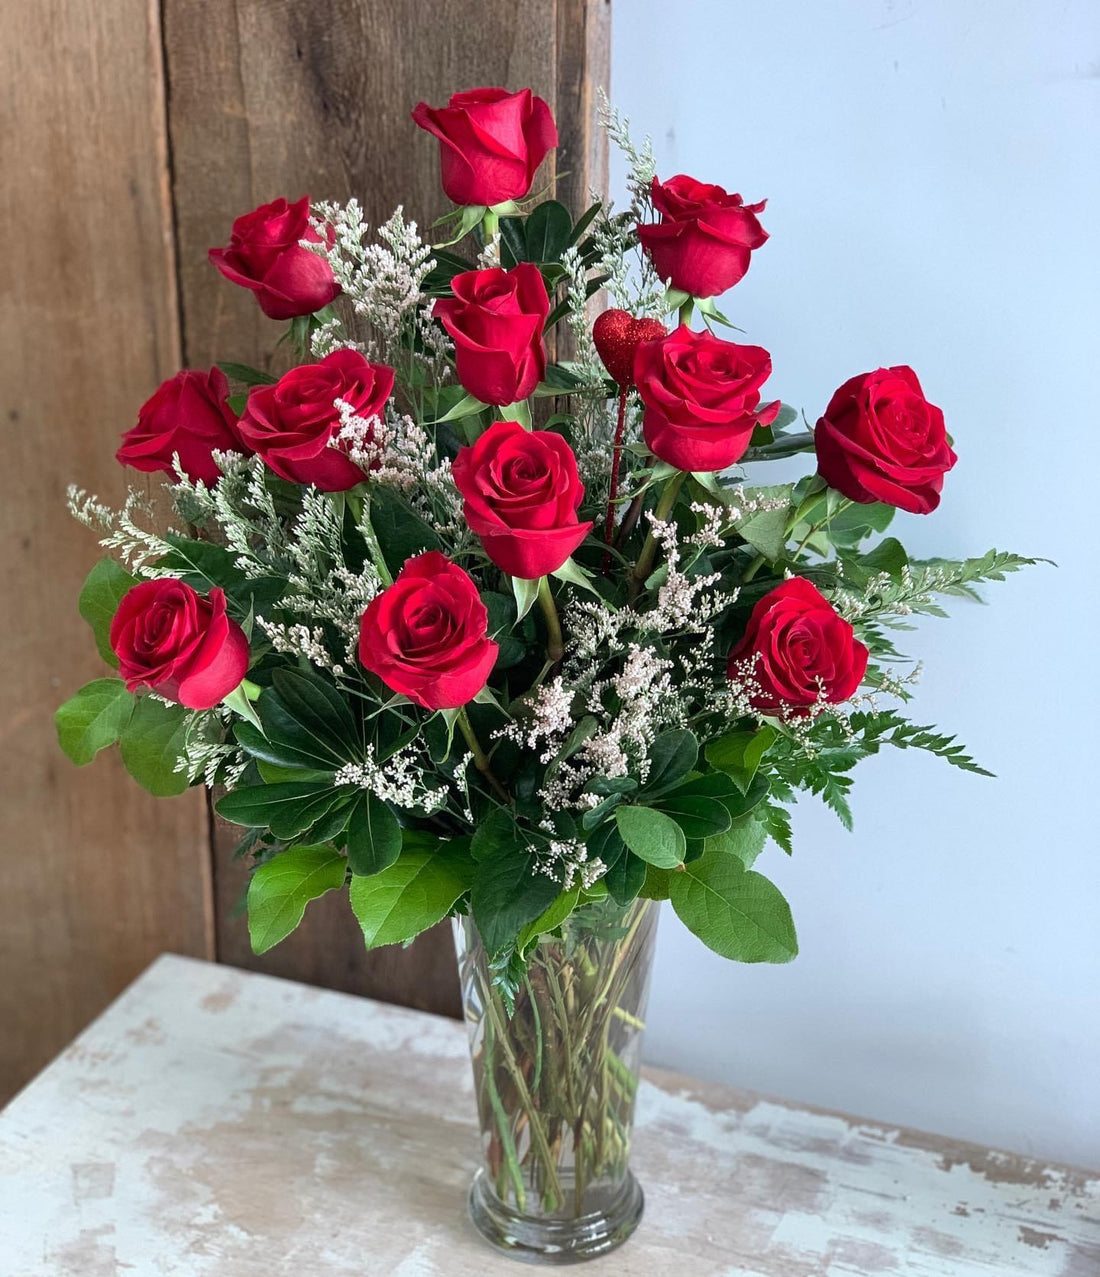 Dozen Roses in Vase